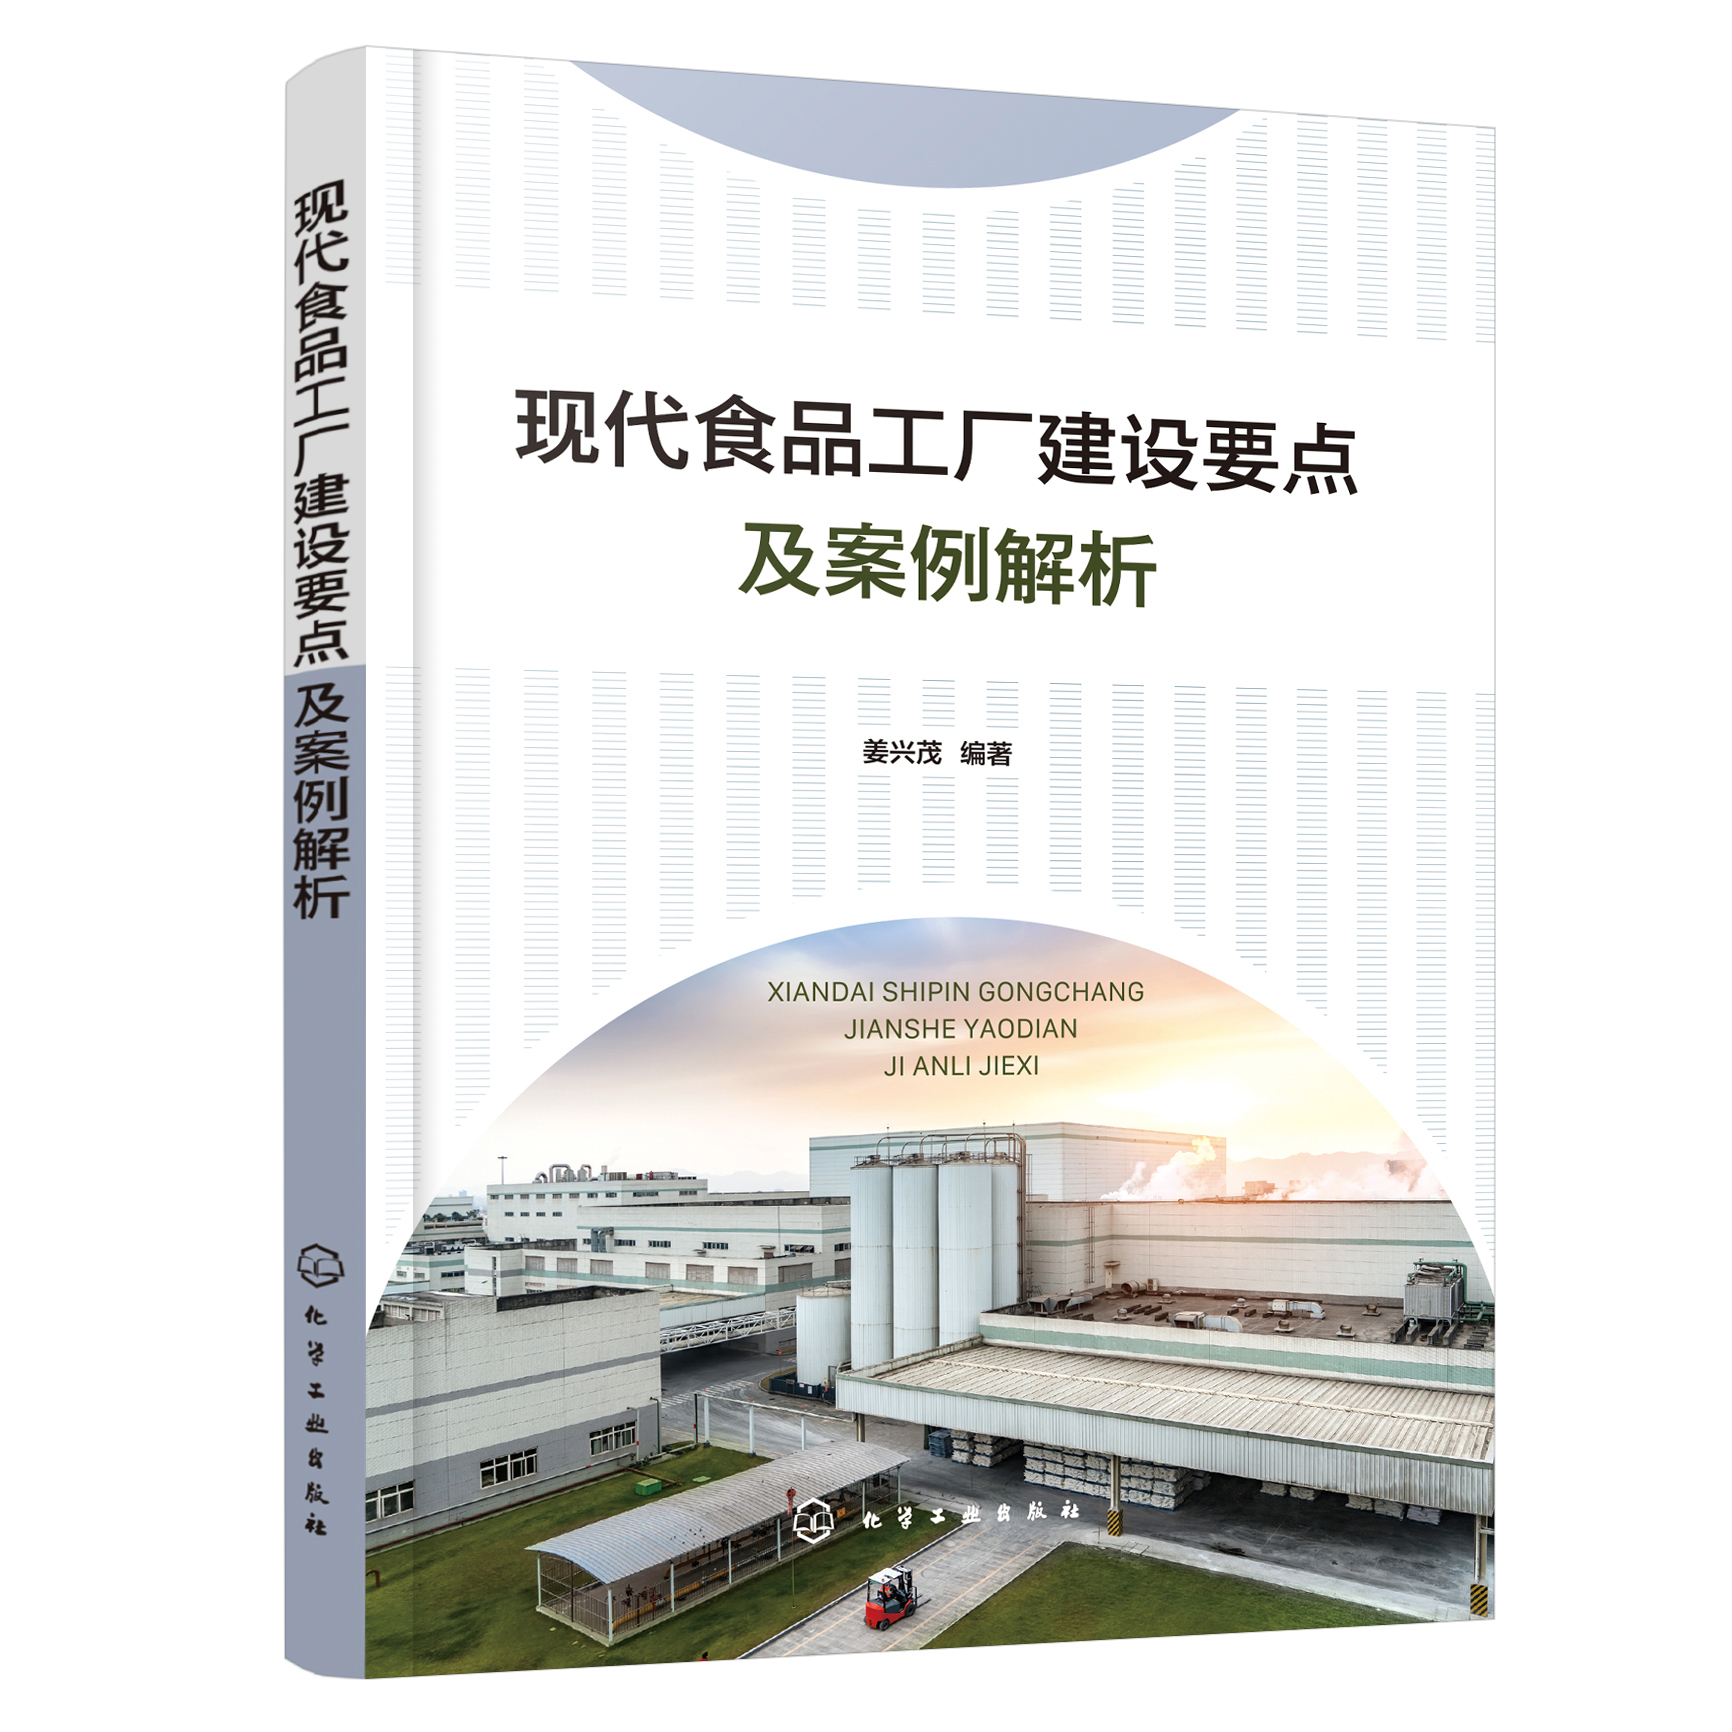 正版书籍 现代食品工厂建设要点及案例解析 姜兴茂  编著化学工业出版社9787122397317 58.00